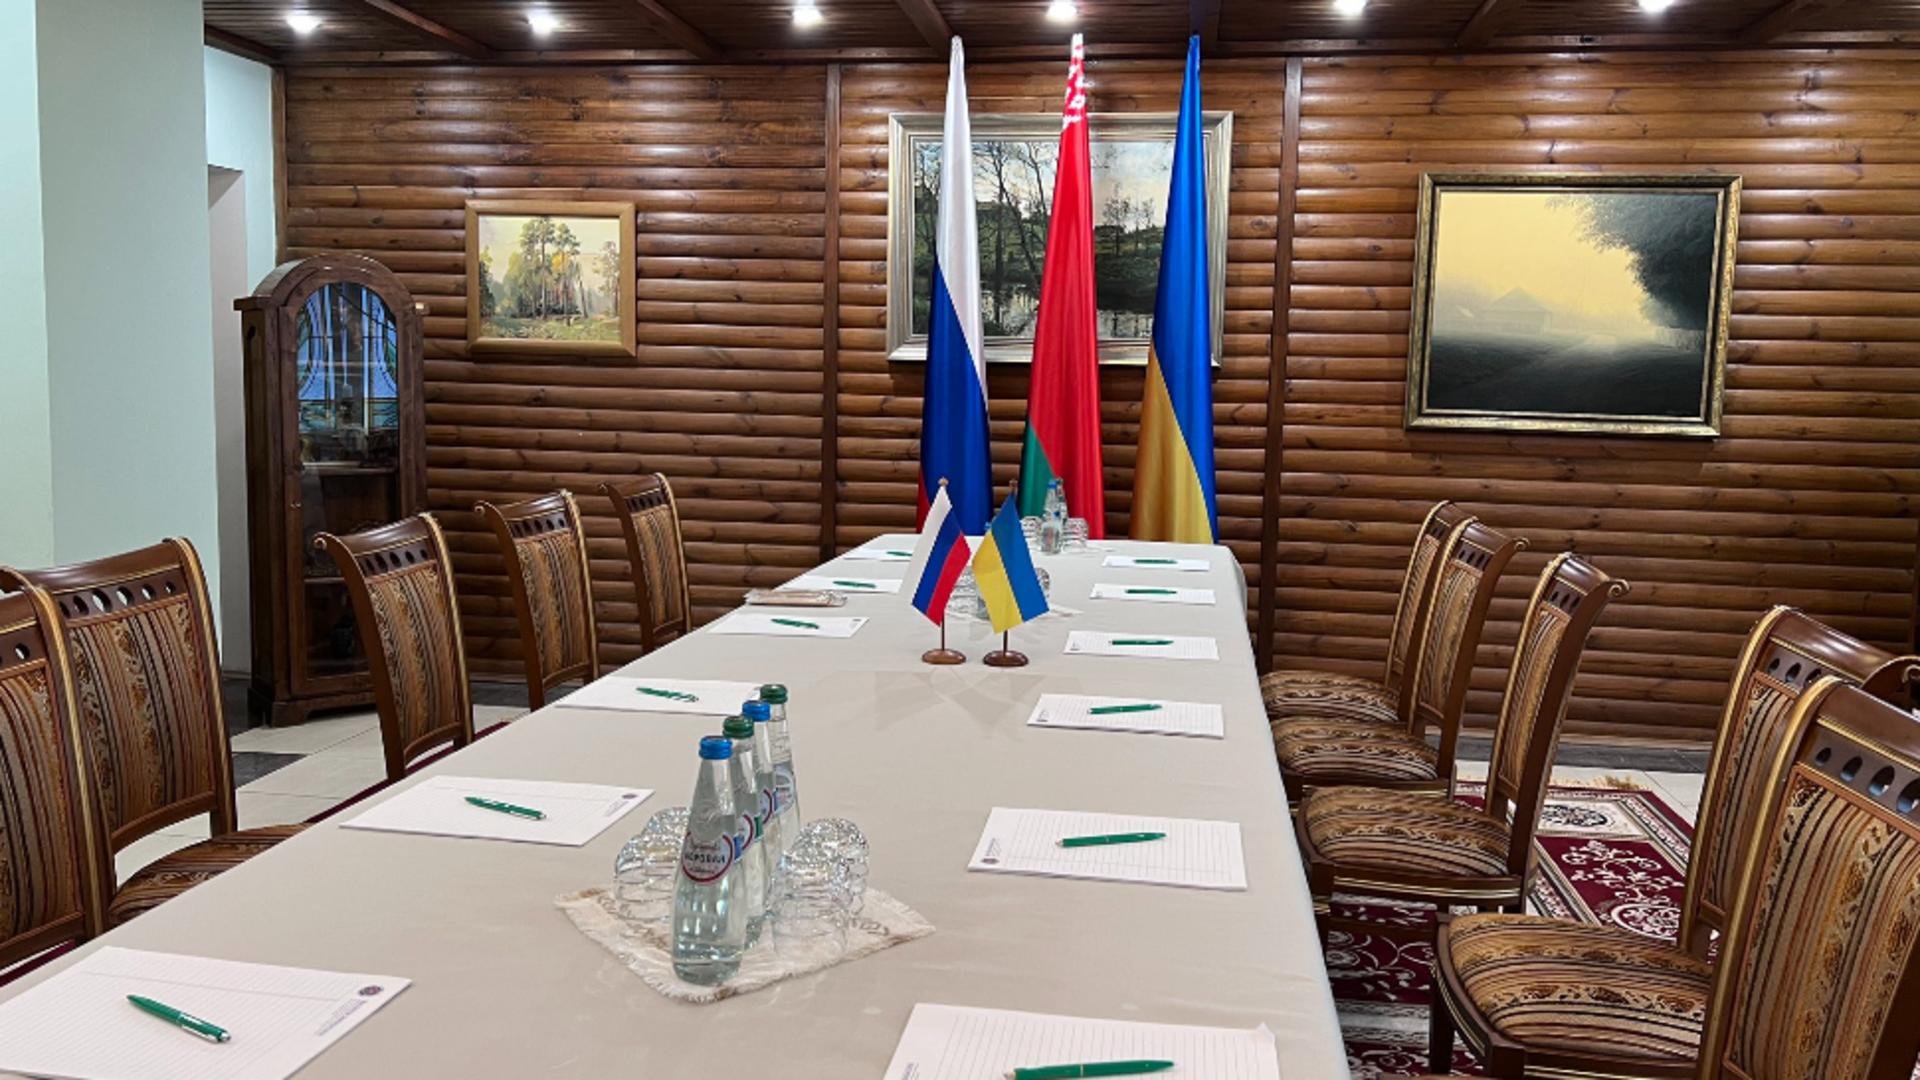 Masa primelor runde de negocieri din Belarus - imagine de arhivă